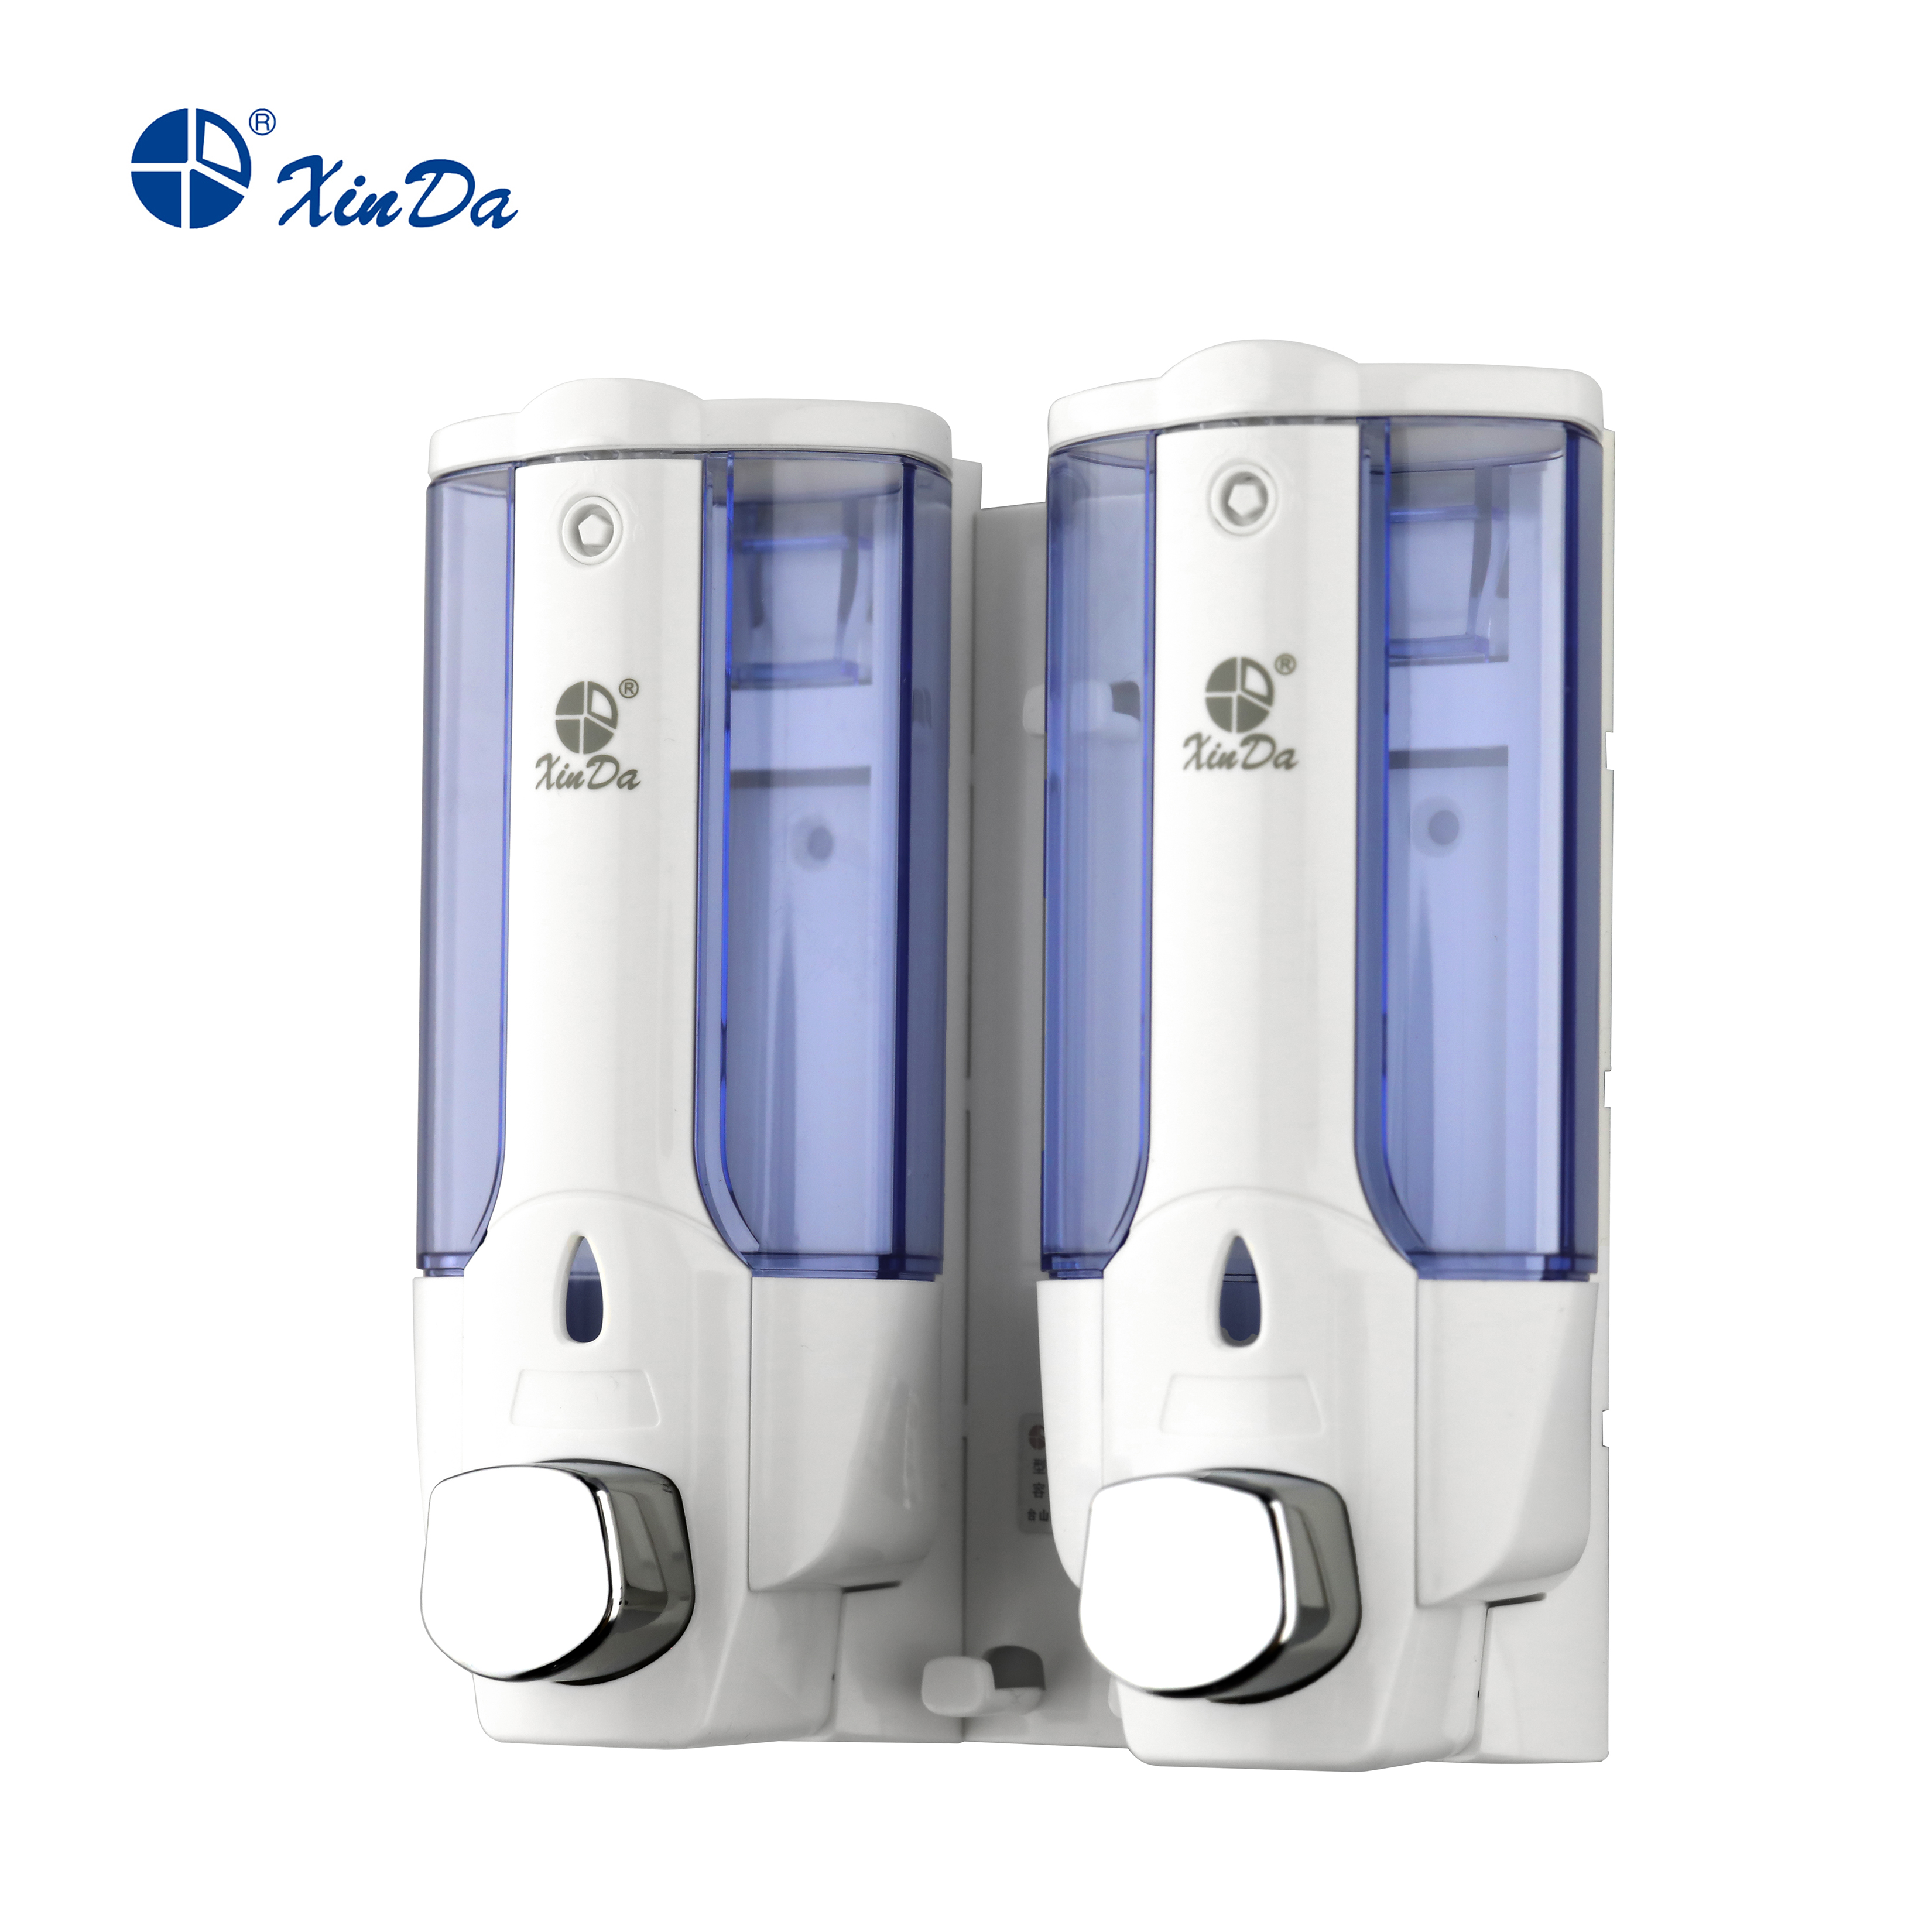 تلگراف صابون عملکردی Xinda ZYQ138s 380 ML X2 پمپ فشاری پلاستیکی سفید ضدعفونی کننده حمام دیواری با قفل کلید